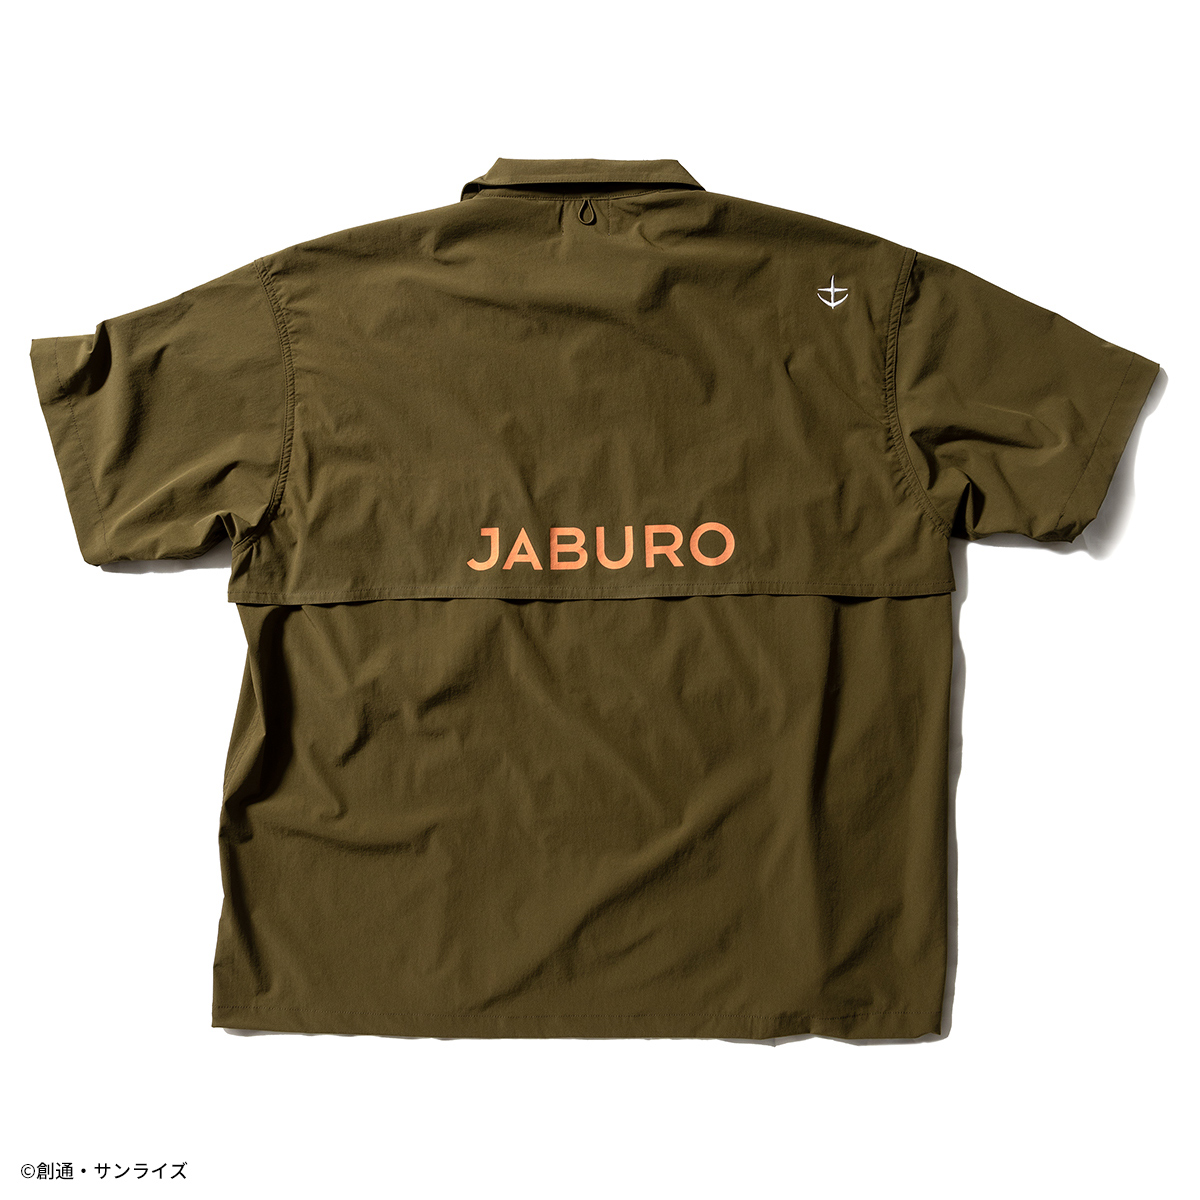 『機動戦士ガンダム』より、スタイリッシュなアウトドアスタイルを提案するオリジナルブランド”JABURO”の夏の新作アパレルが登場!!